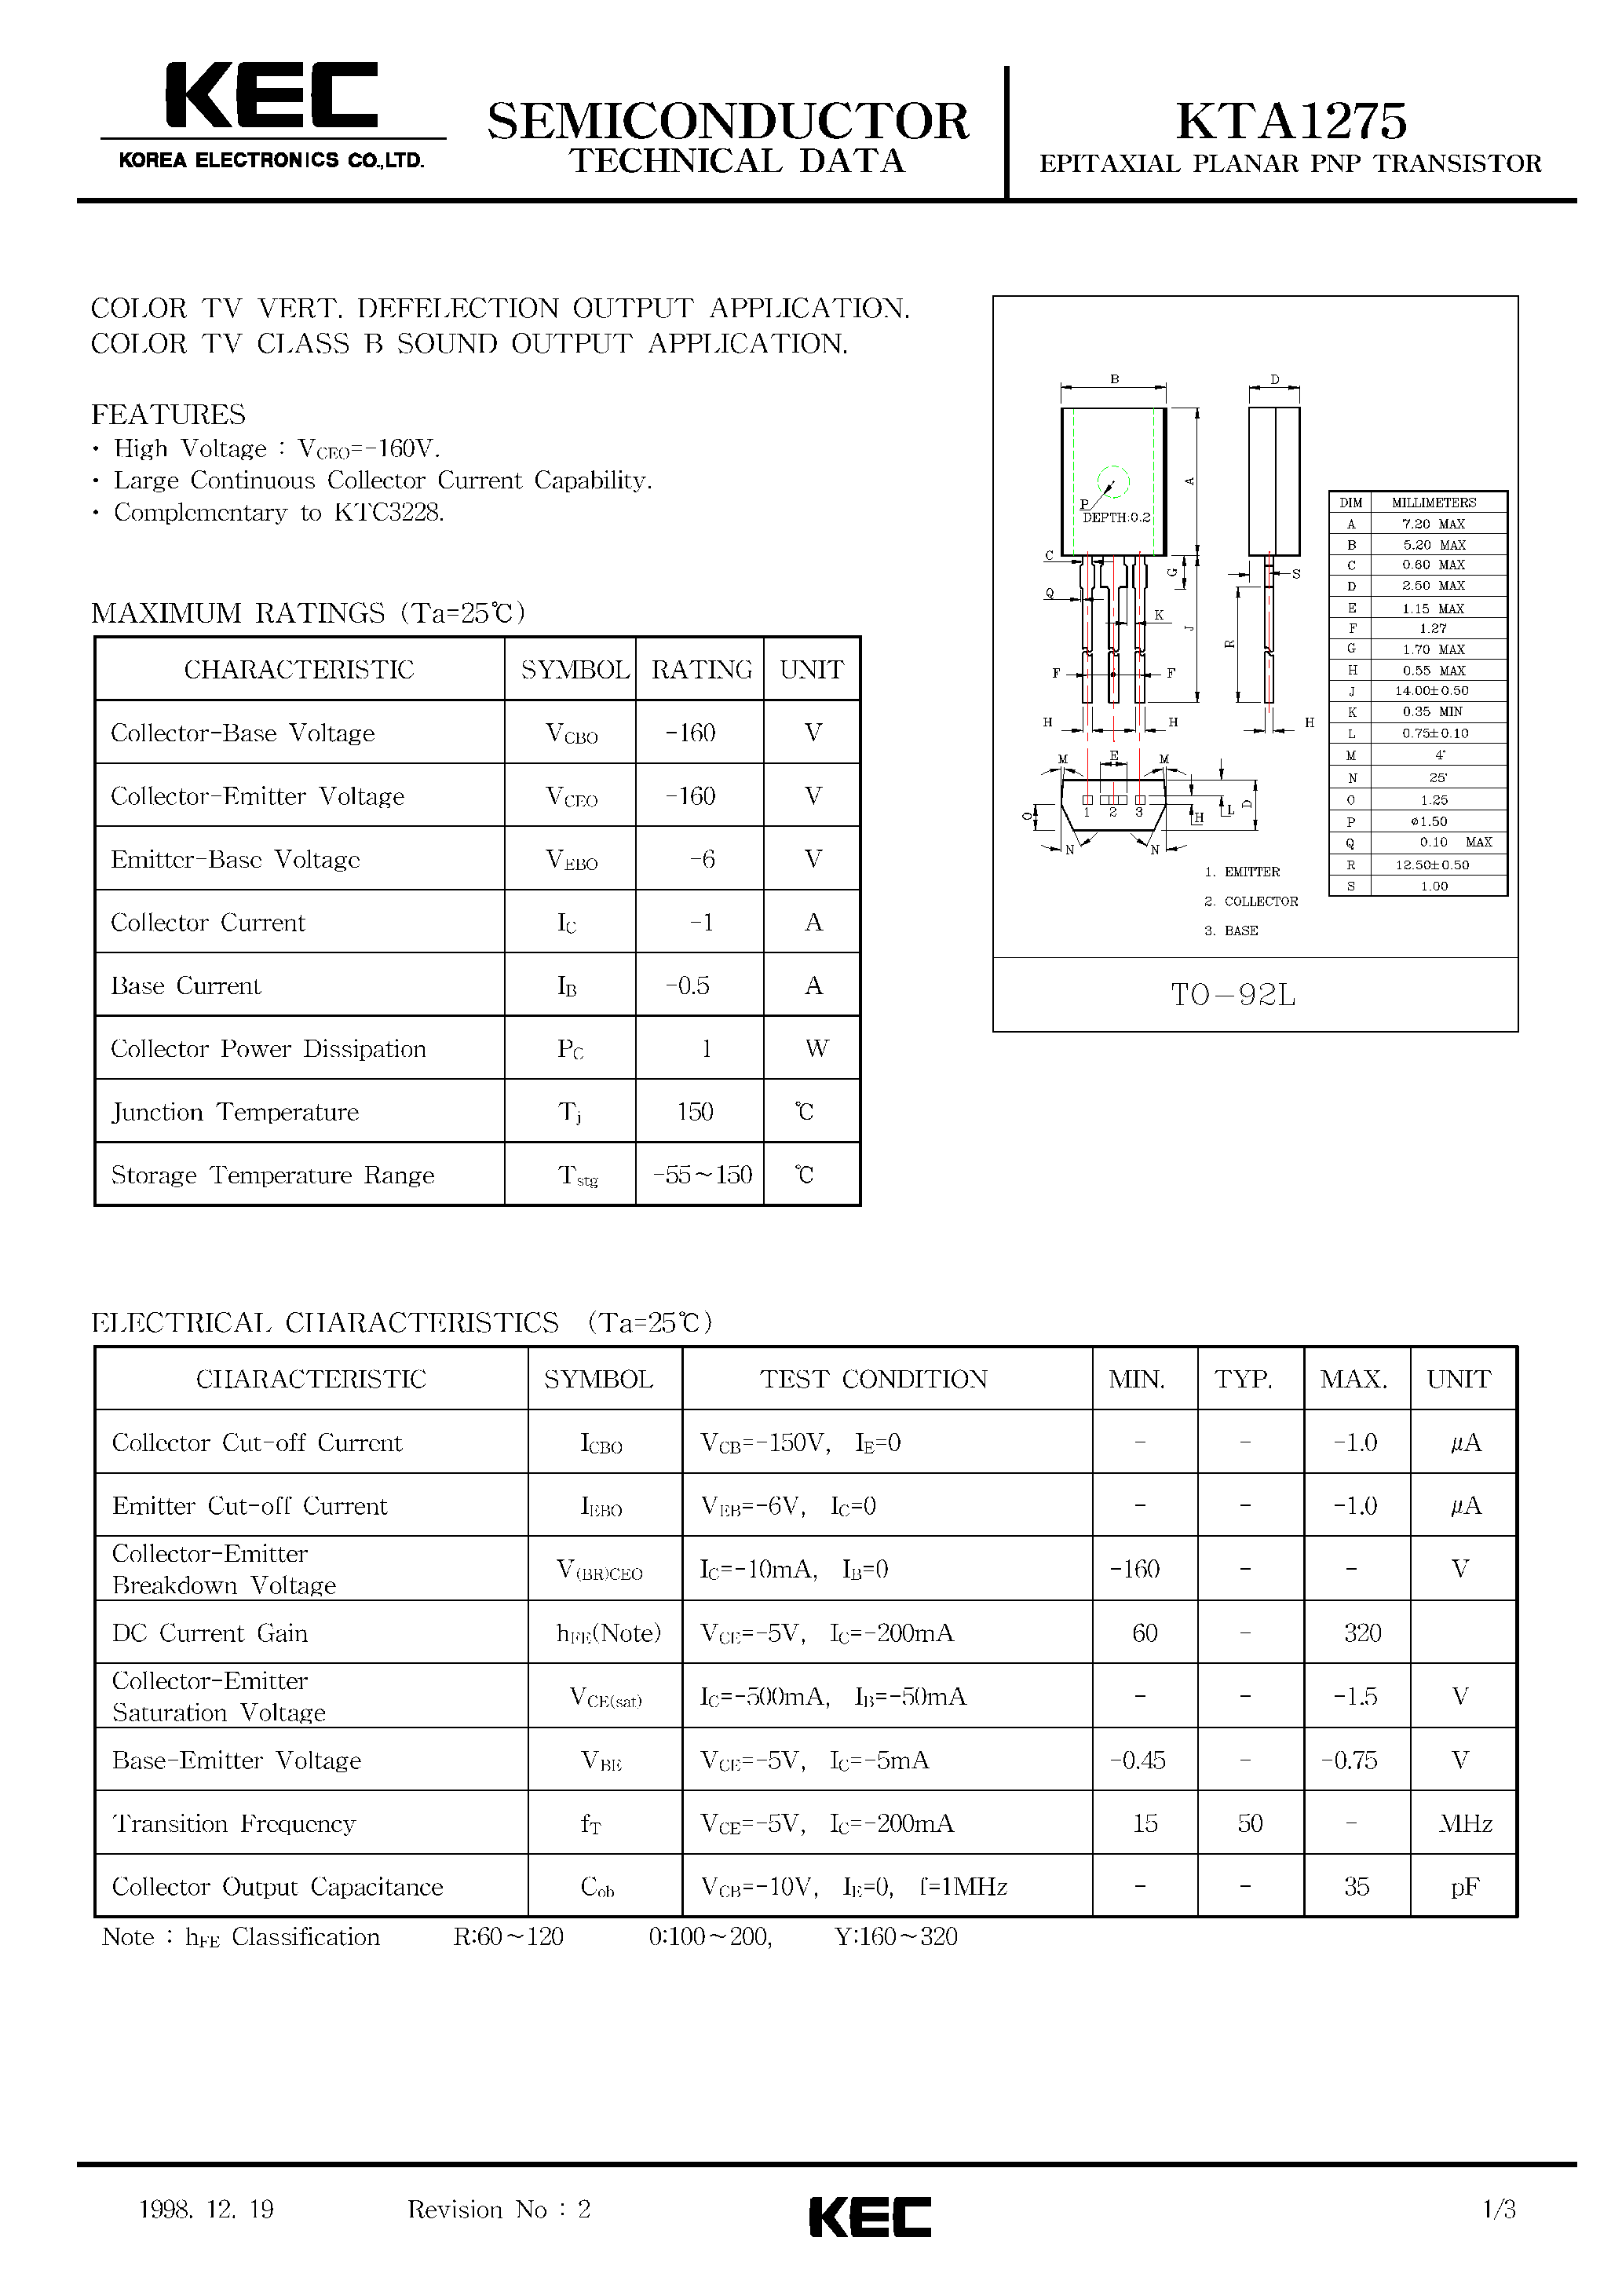 Datasheet TA1275 - EPITAXIAL PLANAR PNP TRANSISTOR page 1